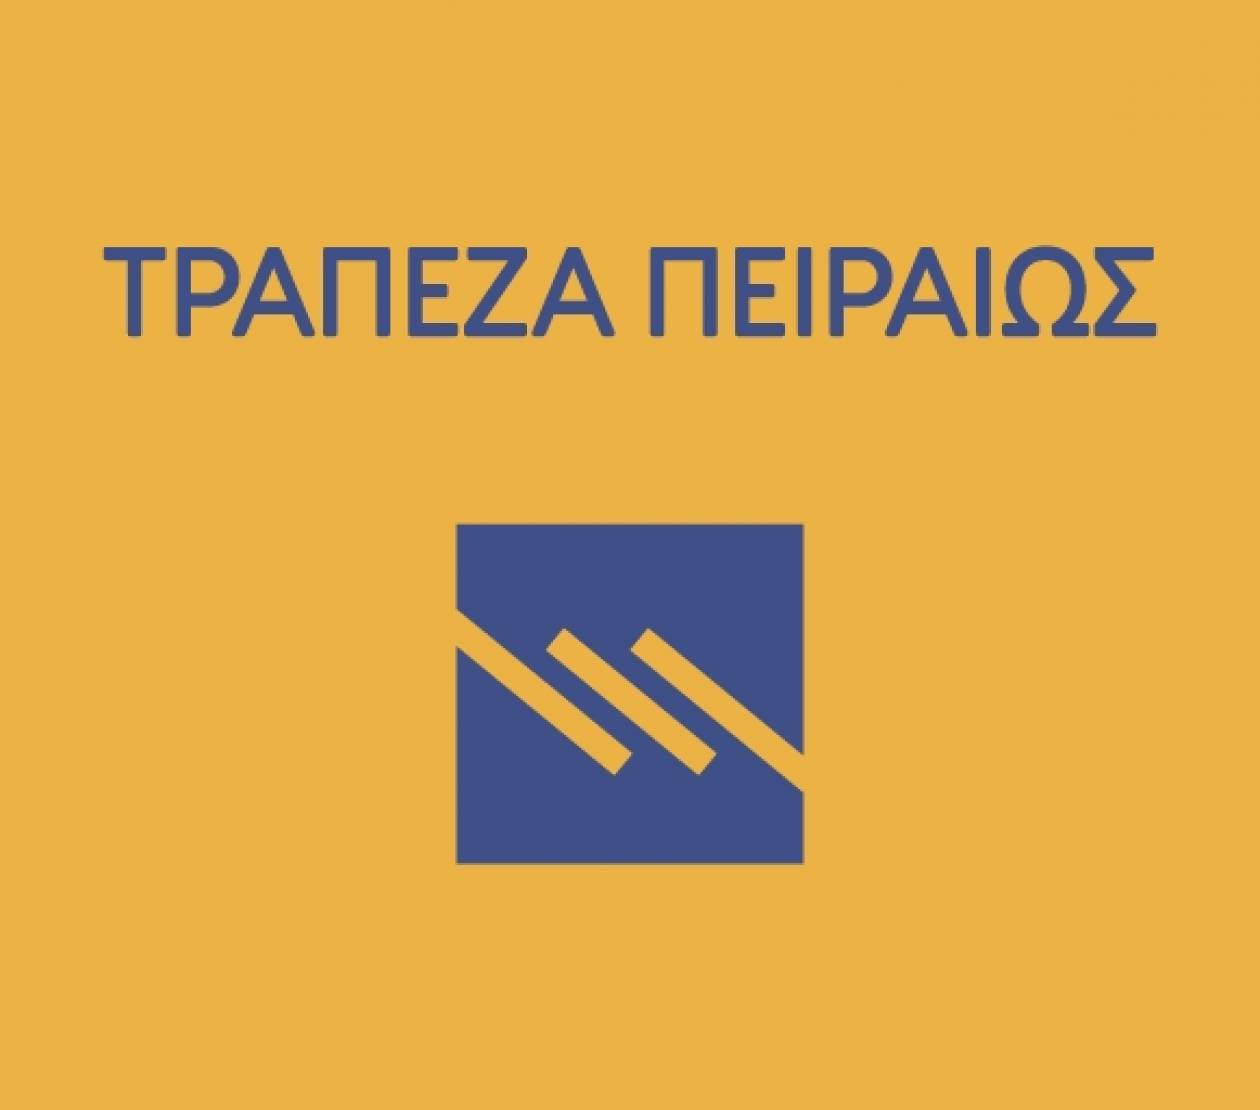 Τράπεζα Πειραιώς: Ενιαίο πληροφοριακό σύστημα με την Cyprus Popular